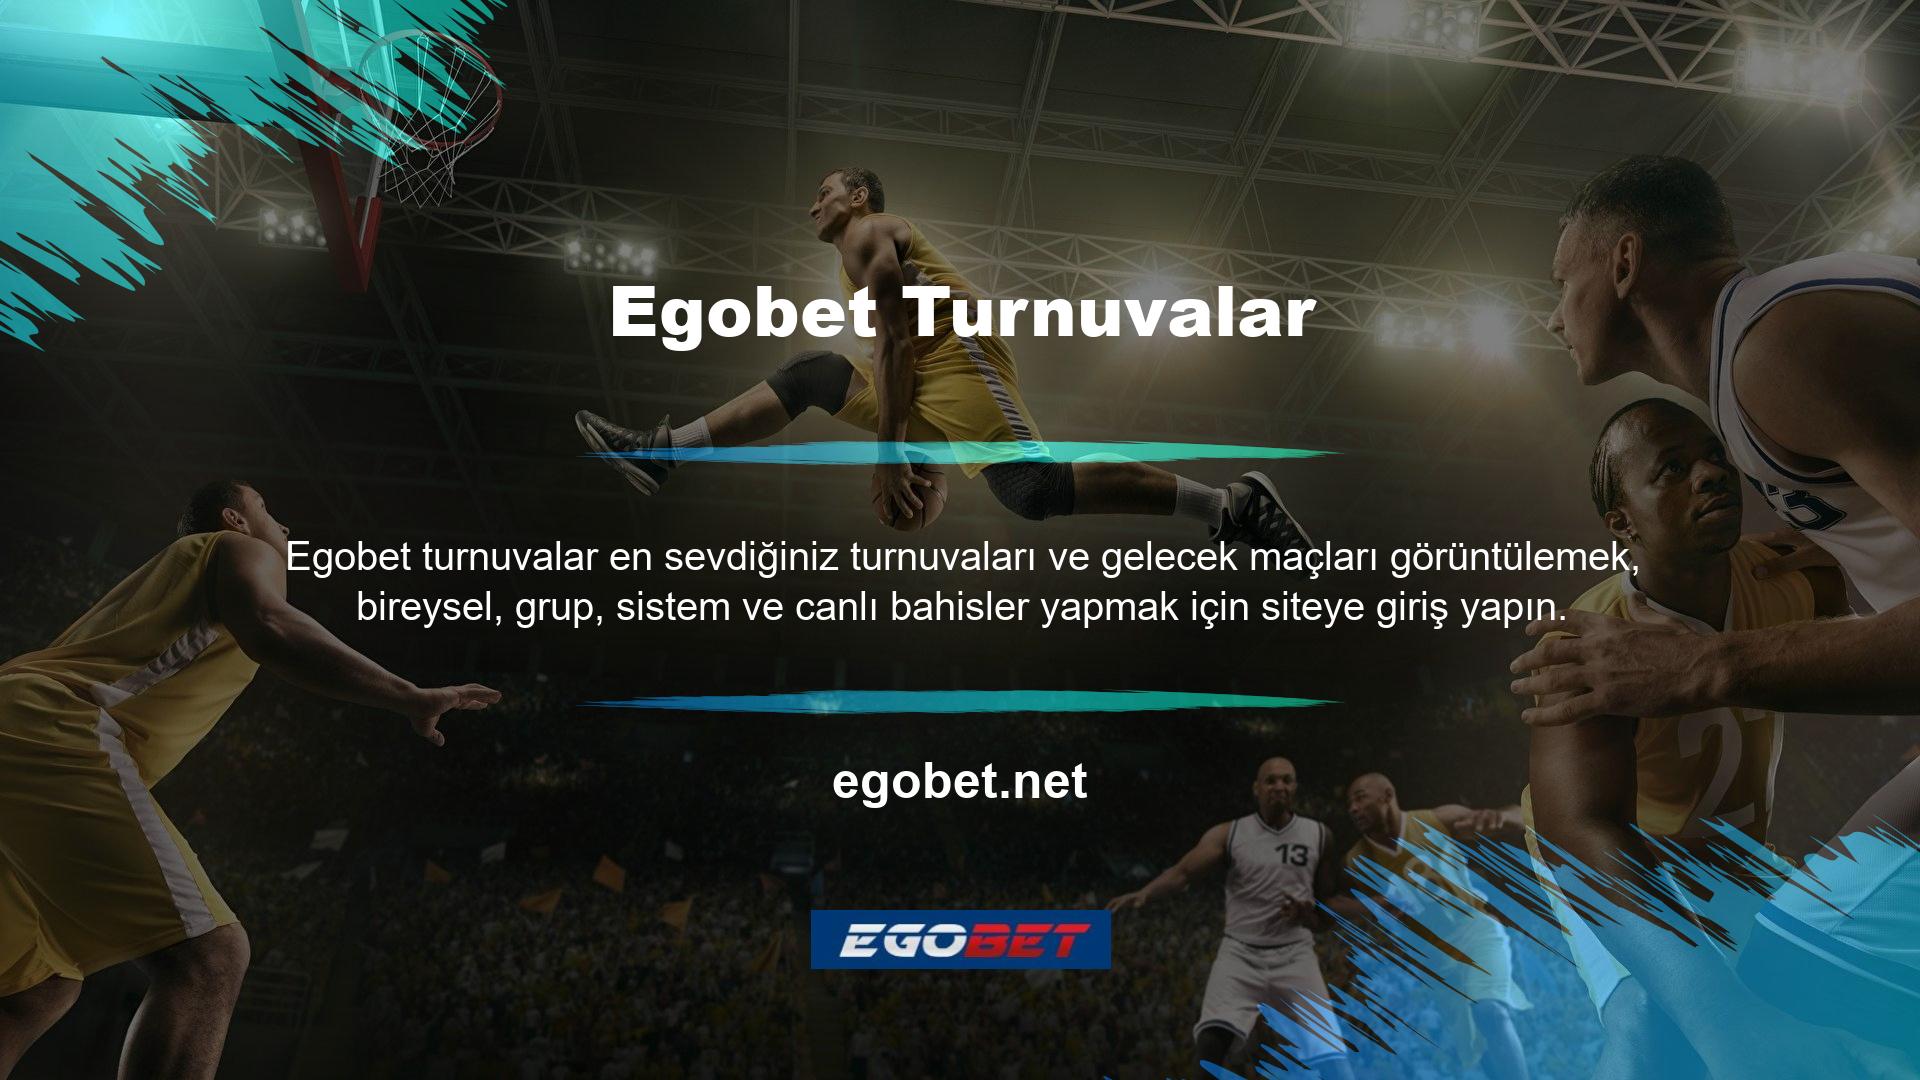 Diyelim ki maç öncesi bir spor etkinliğine bahis yapma ve Egobet Mobile'da canlı yayınlama fırsatınız var